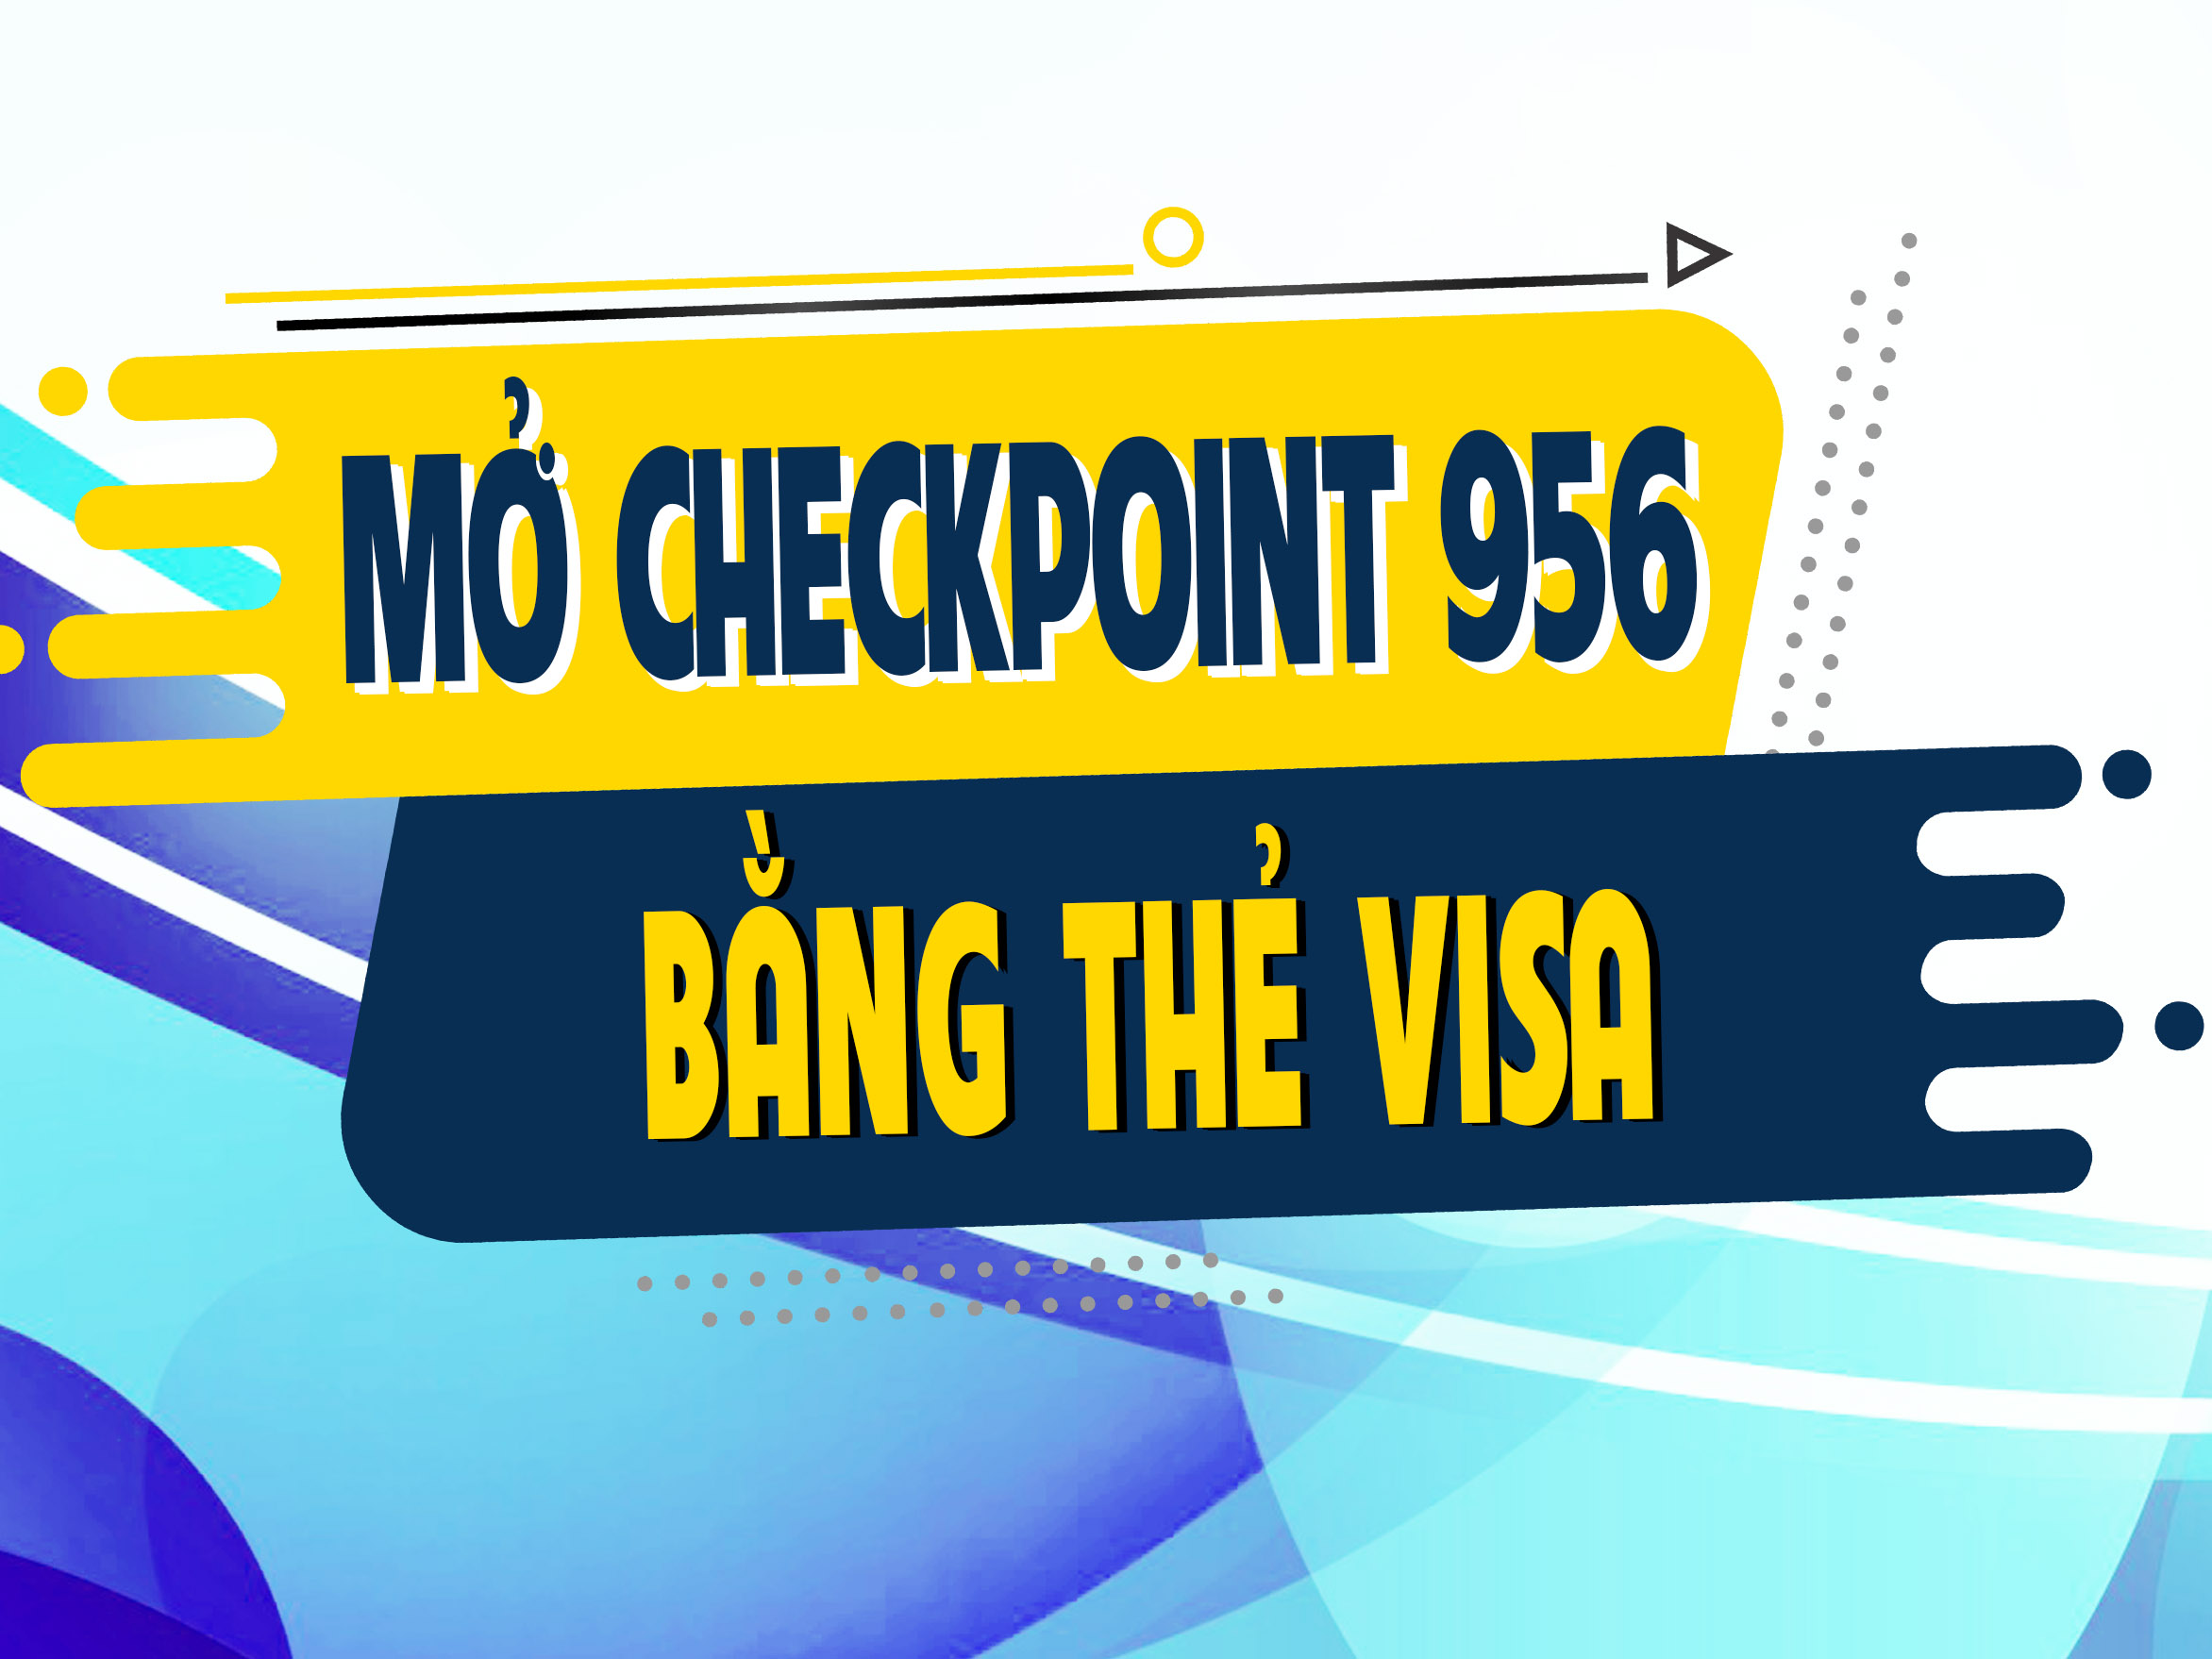 Hướng Dẫn Mở Khóa CheckPoint 956 Bằng Thẻ Visa